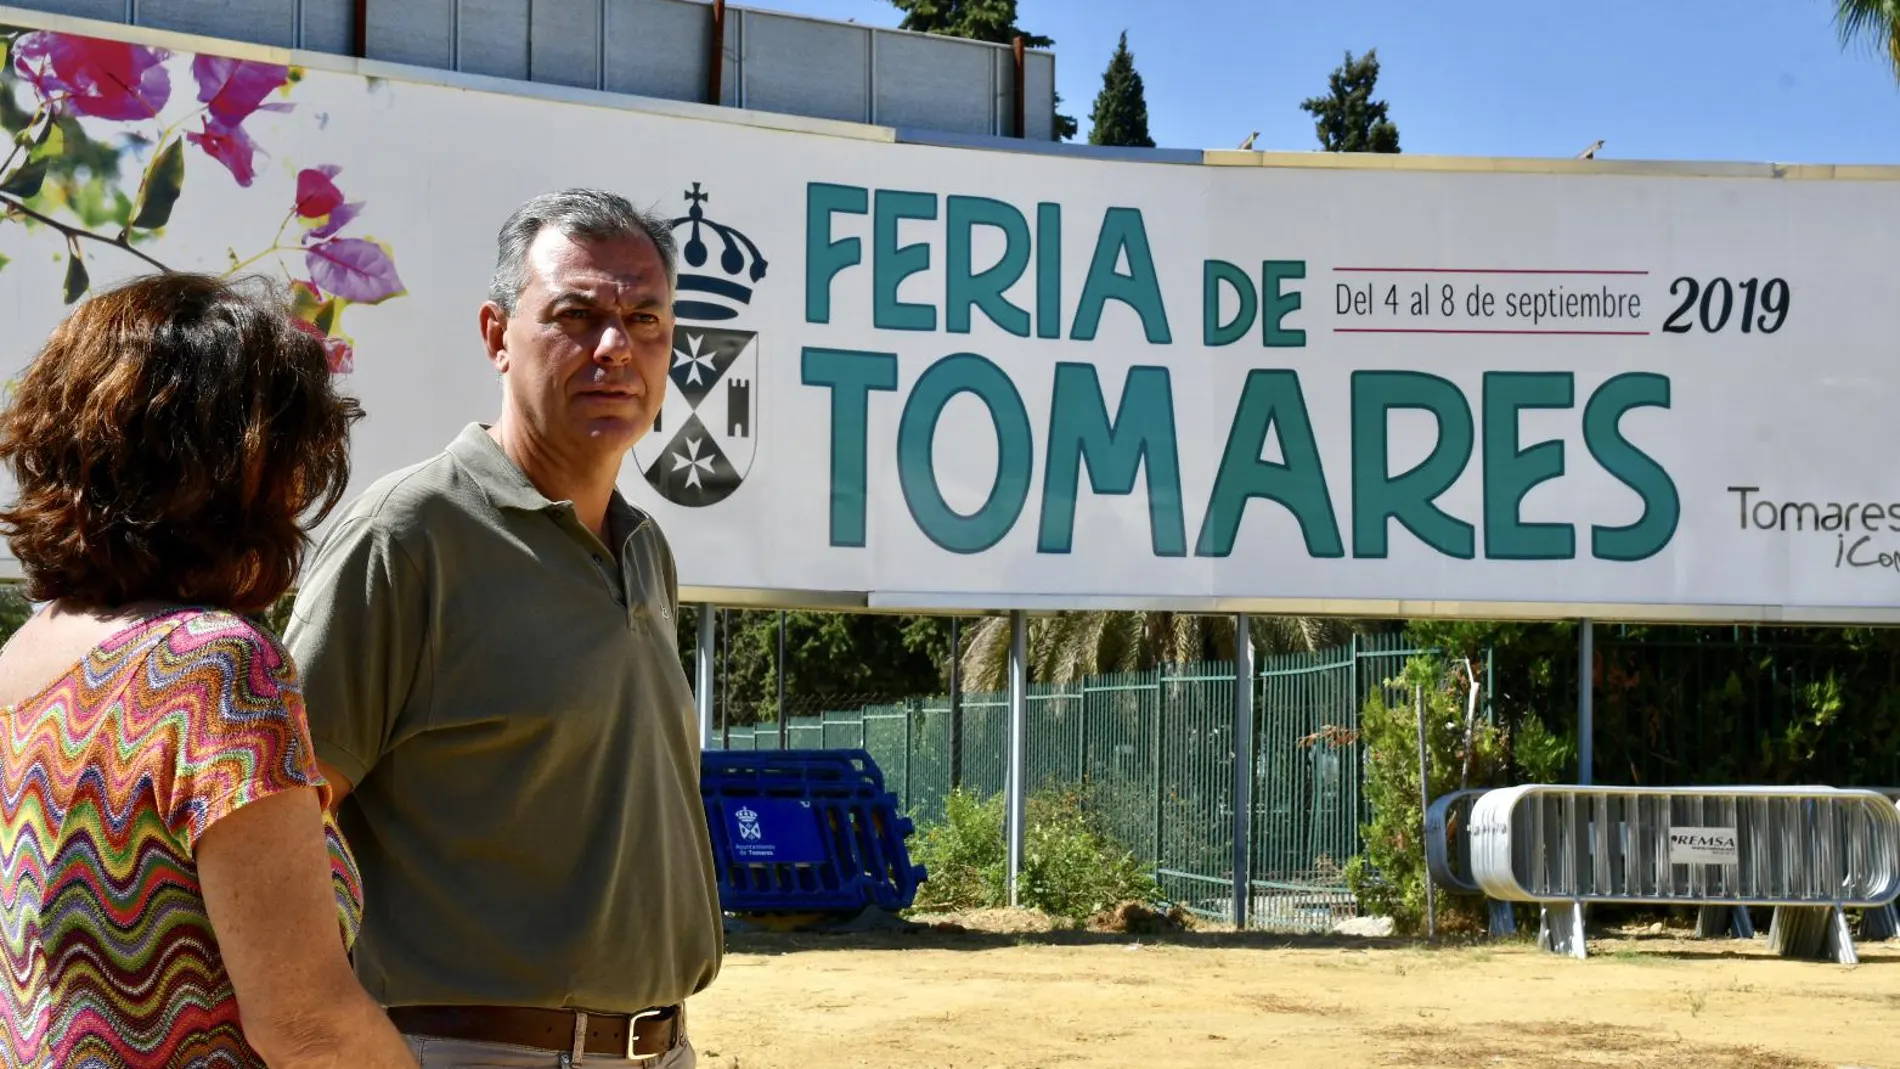 El alcalde de Tomares, José Luis Sanz, y la concejal de Festejos, Mª Carmen Ortiz, visitan el recinto ferial de Tomares / La Razón